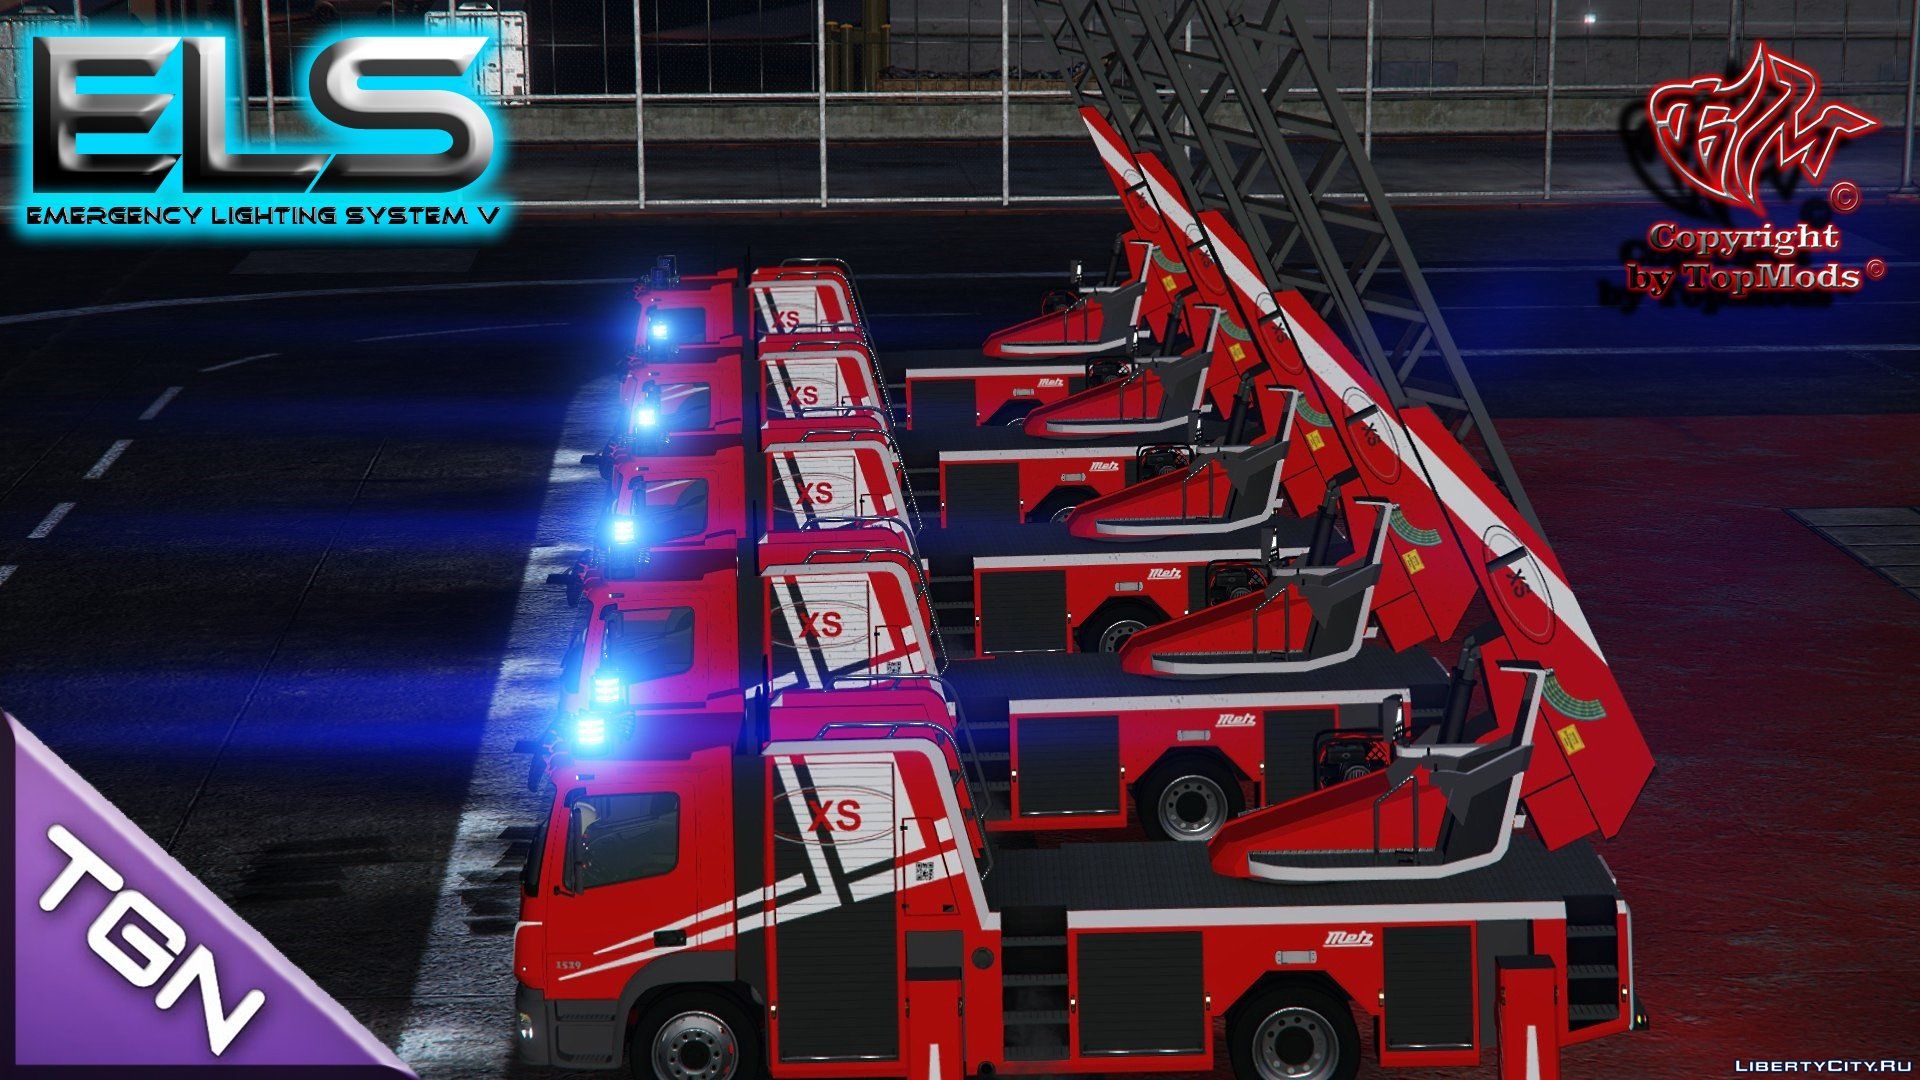 gta 5 ladder fire truck